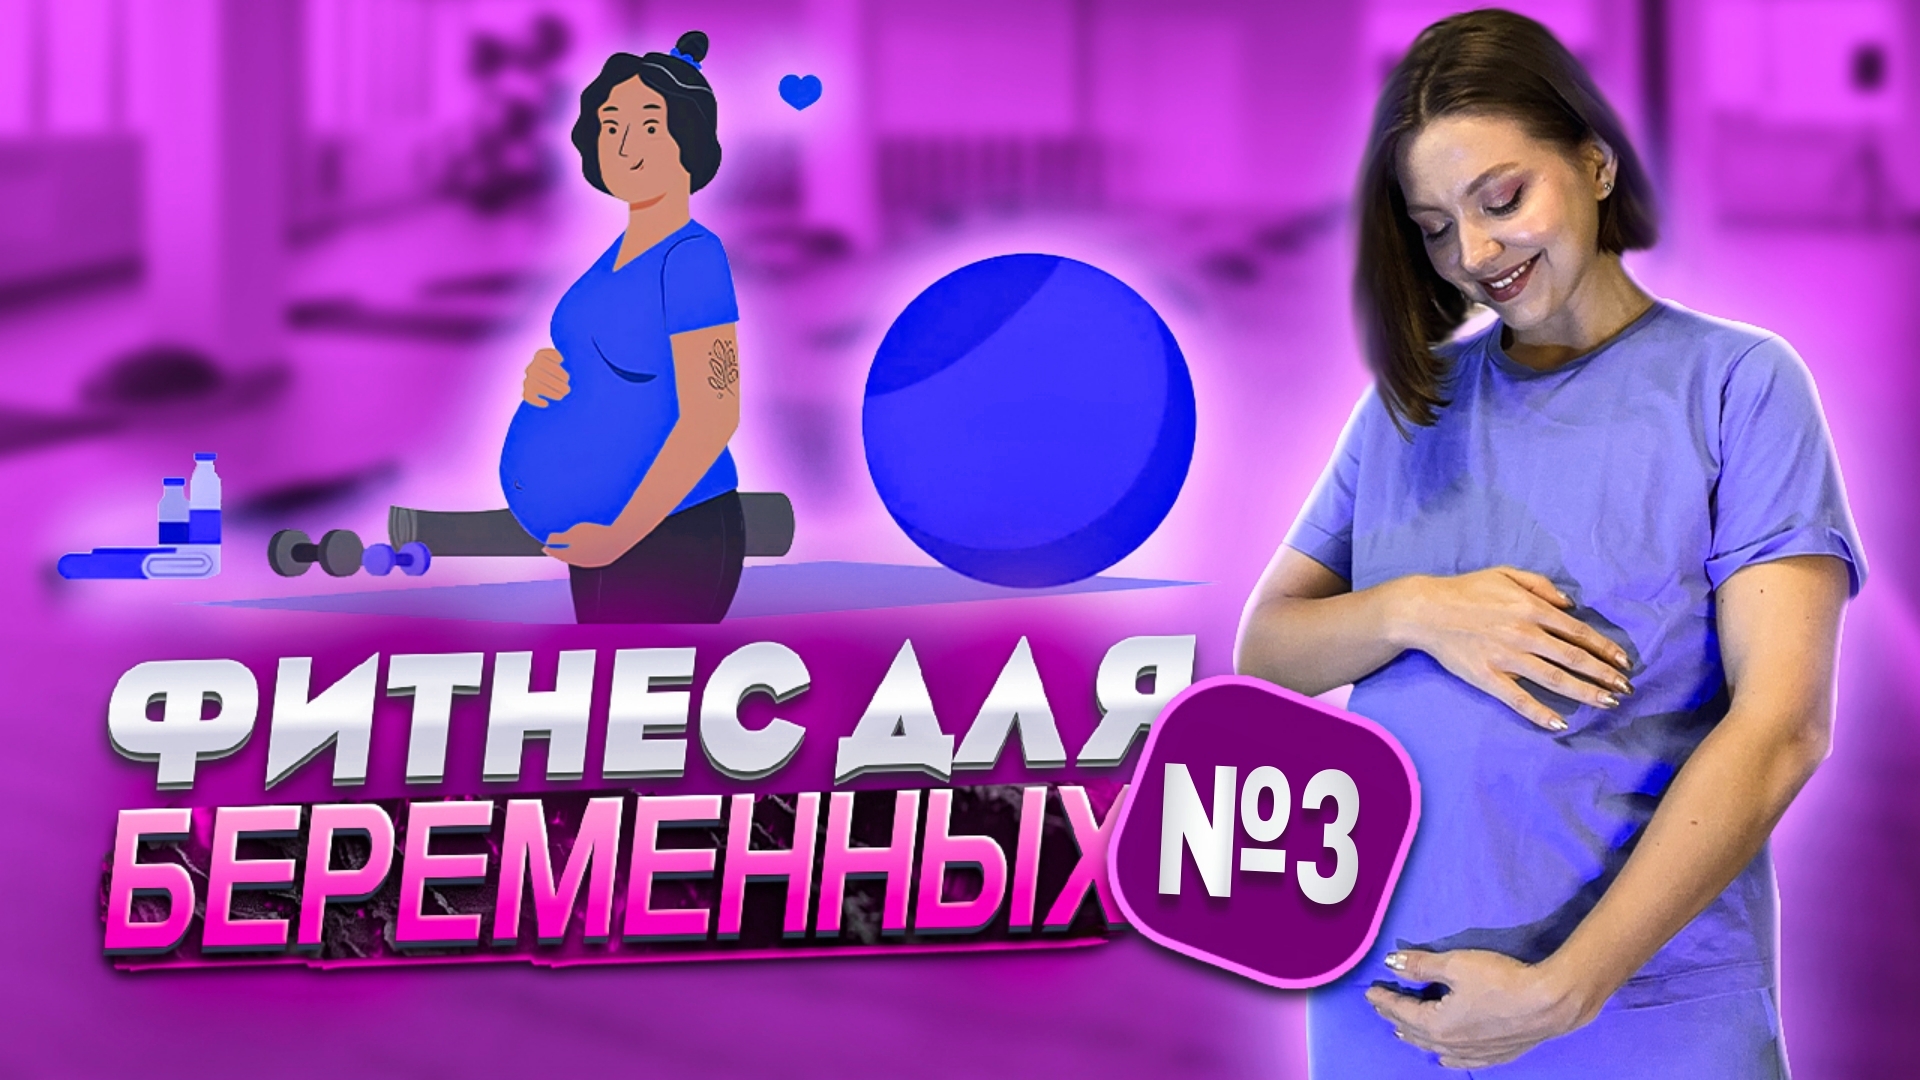 ФИТНЕС ДЛЯ БЕРЕМЕННЫХ №3